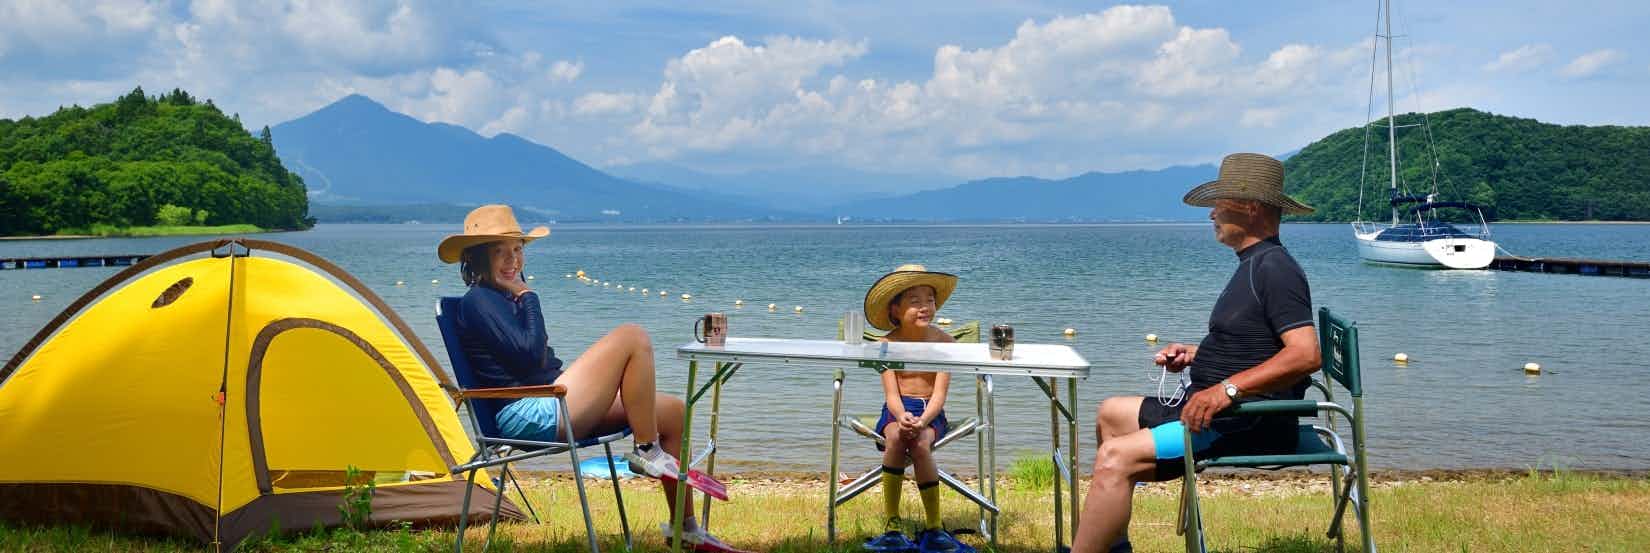 Camping am Lago Maggiore mit Kindern